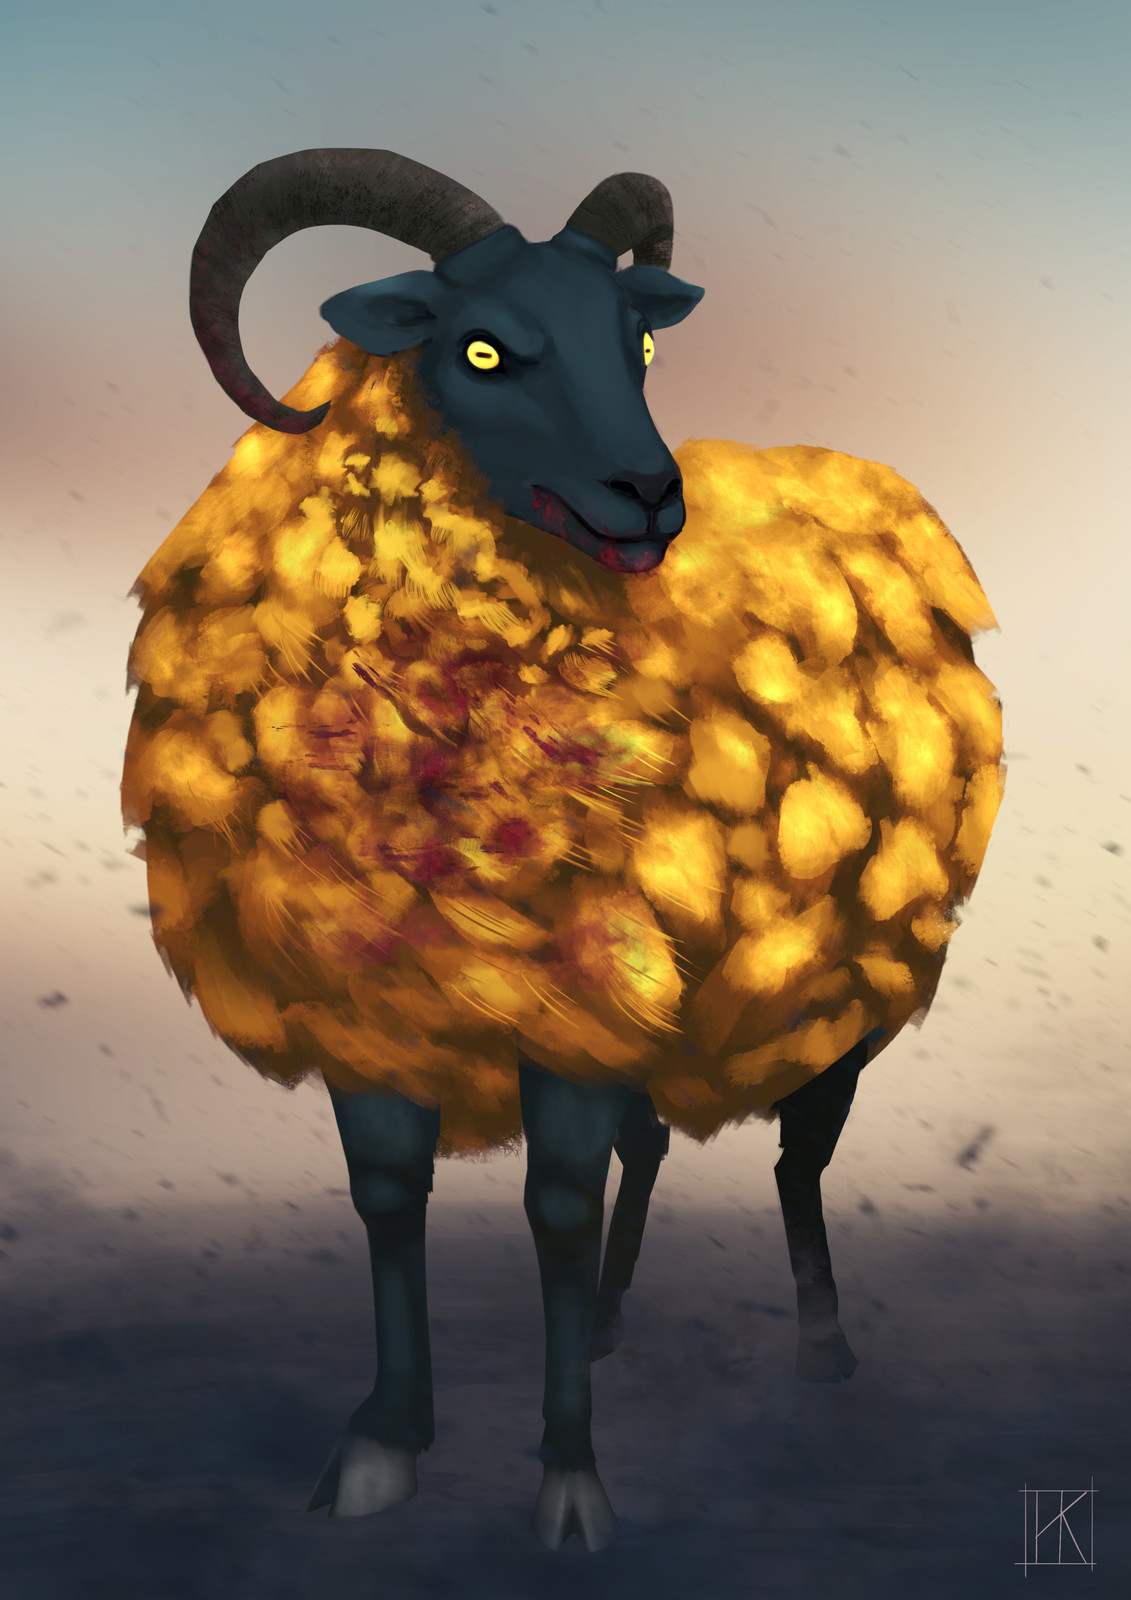 The Golden Fleeced Ram